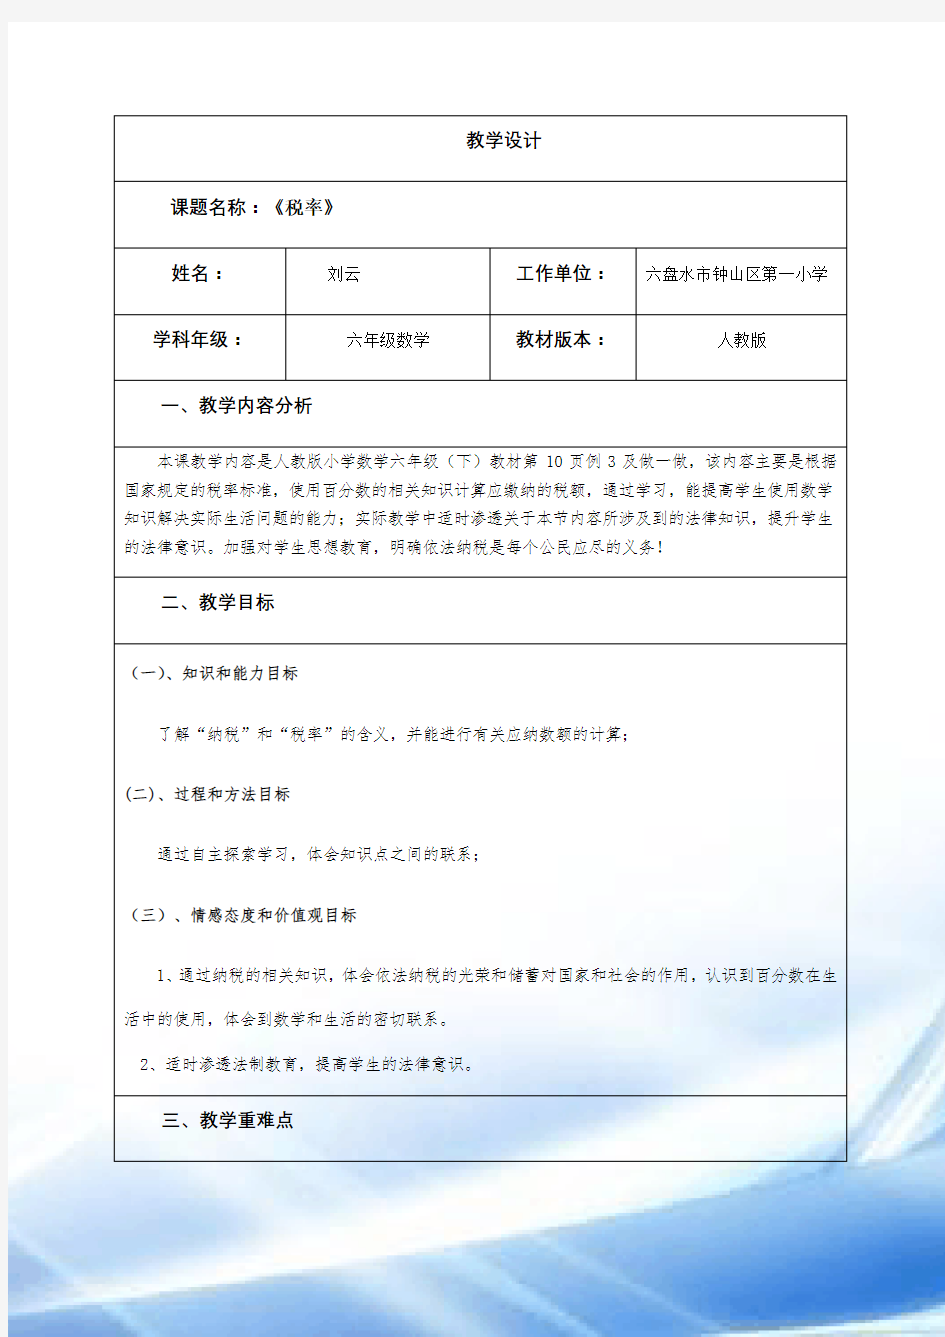 (刘云)2018国培计划作业1-教学设计模板